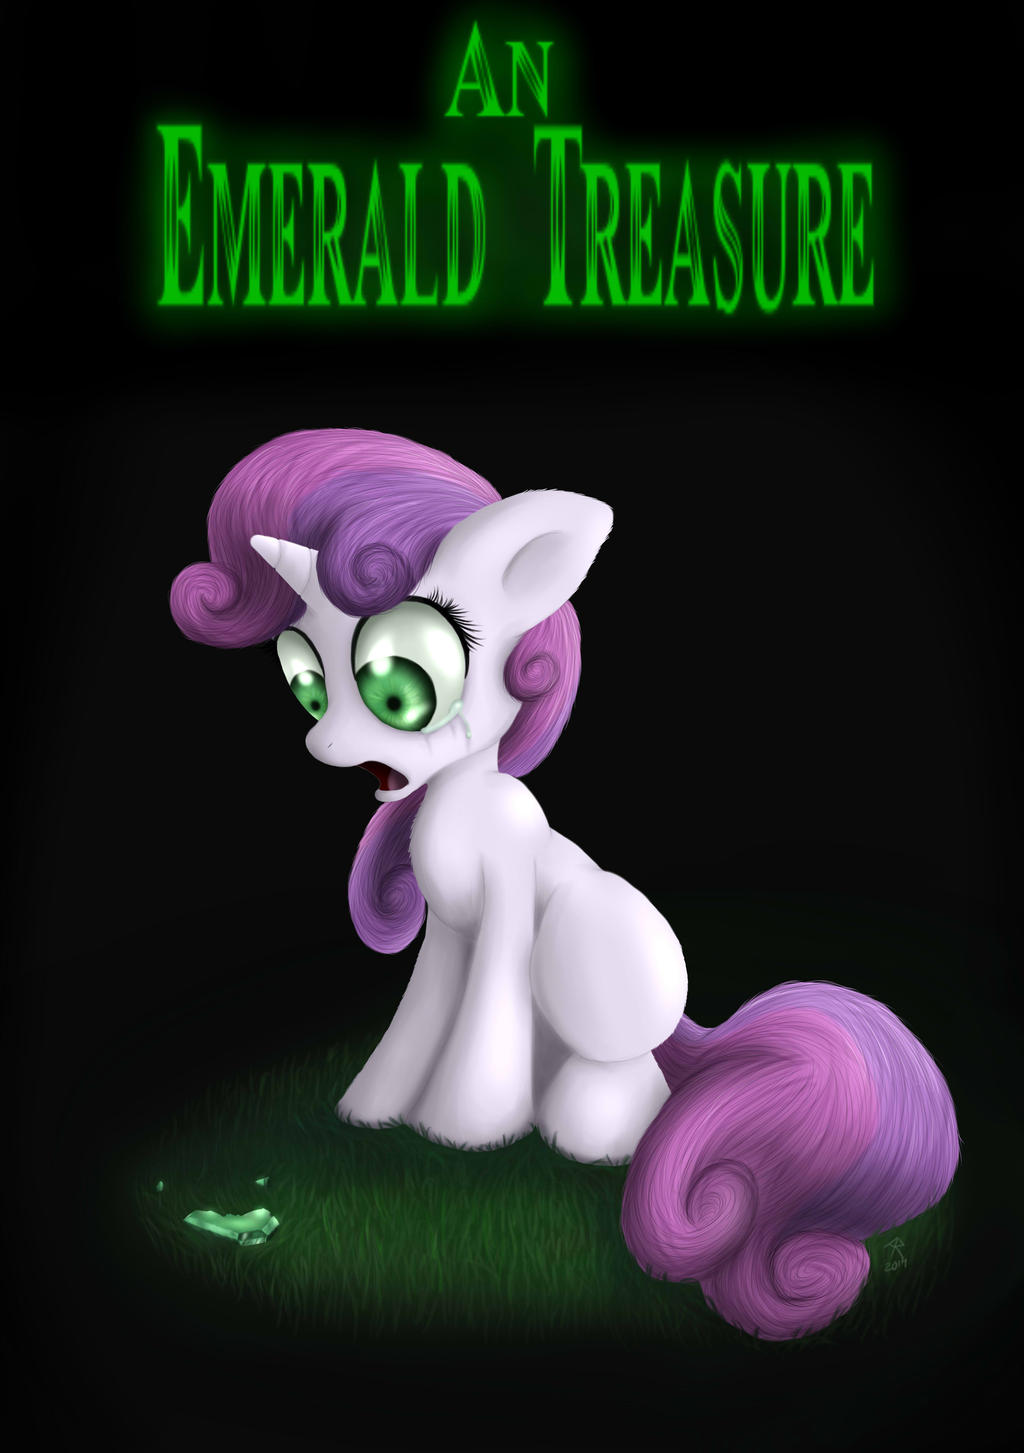 Emerald treasure